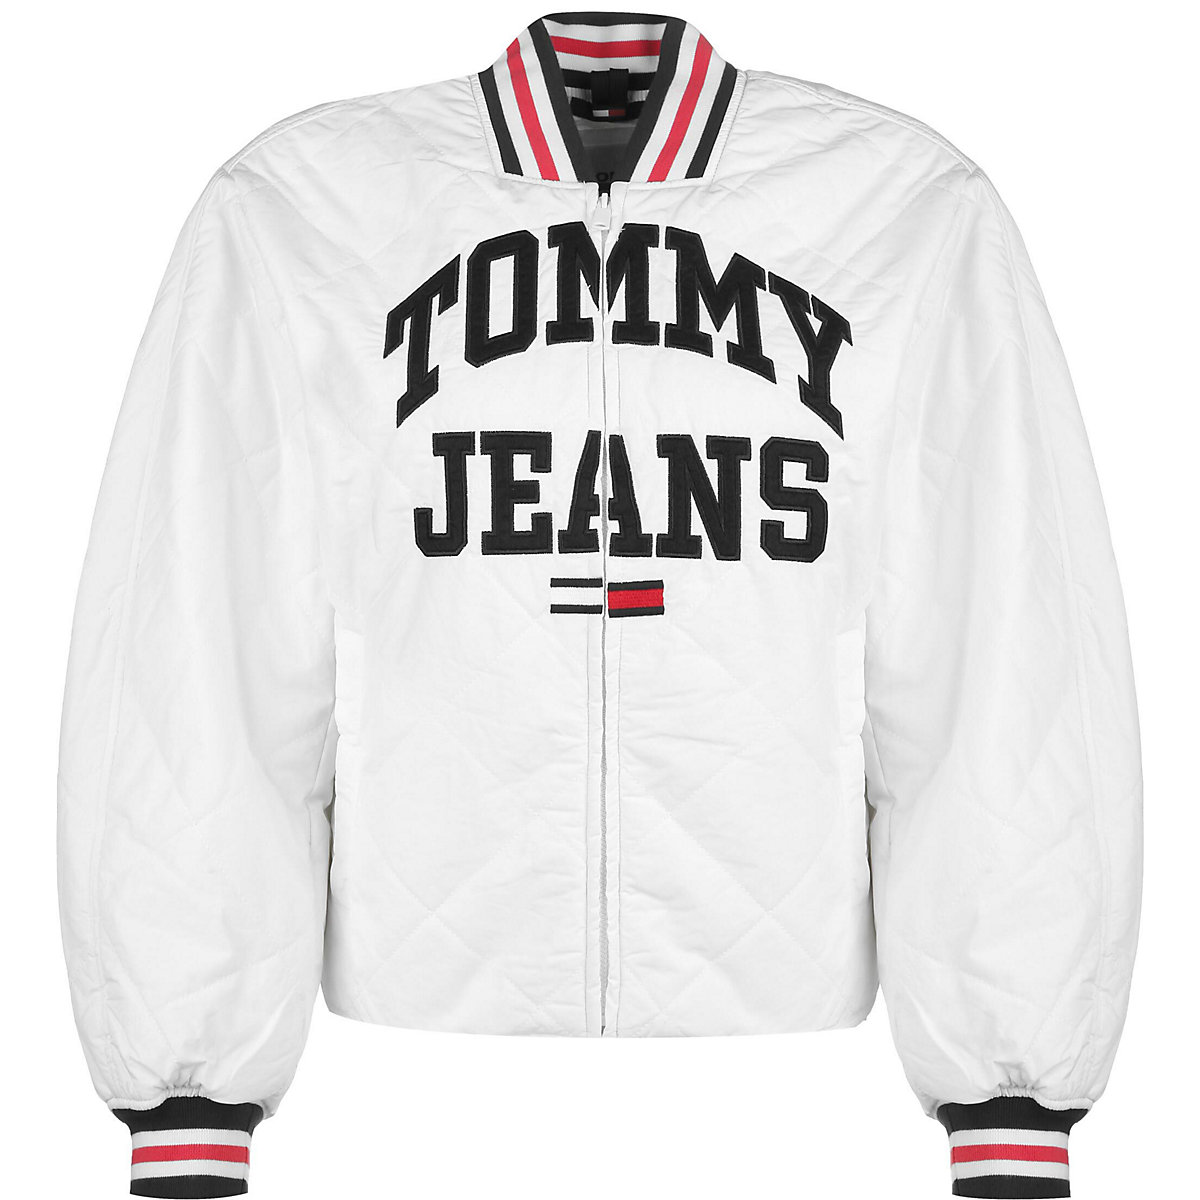 TOMMY JEANS Tommy Jeans Jacke College Übergangsjacken weiß